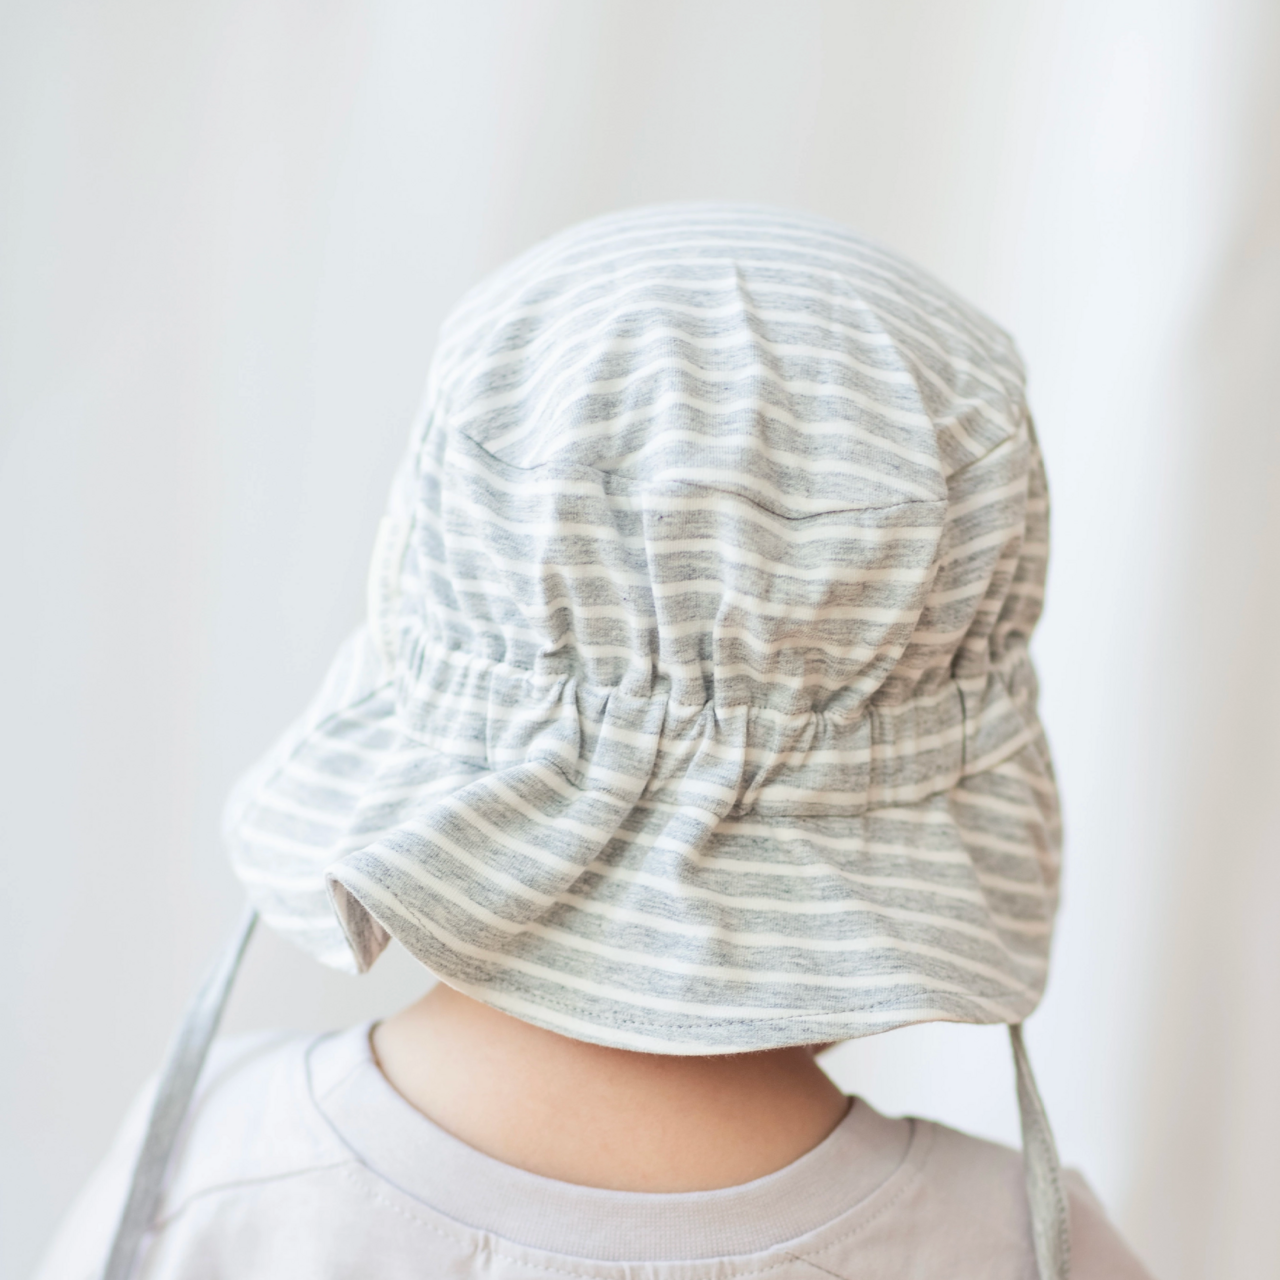 UV Sunny hat Classic Grey mel/white 0-4M